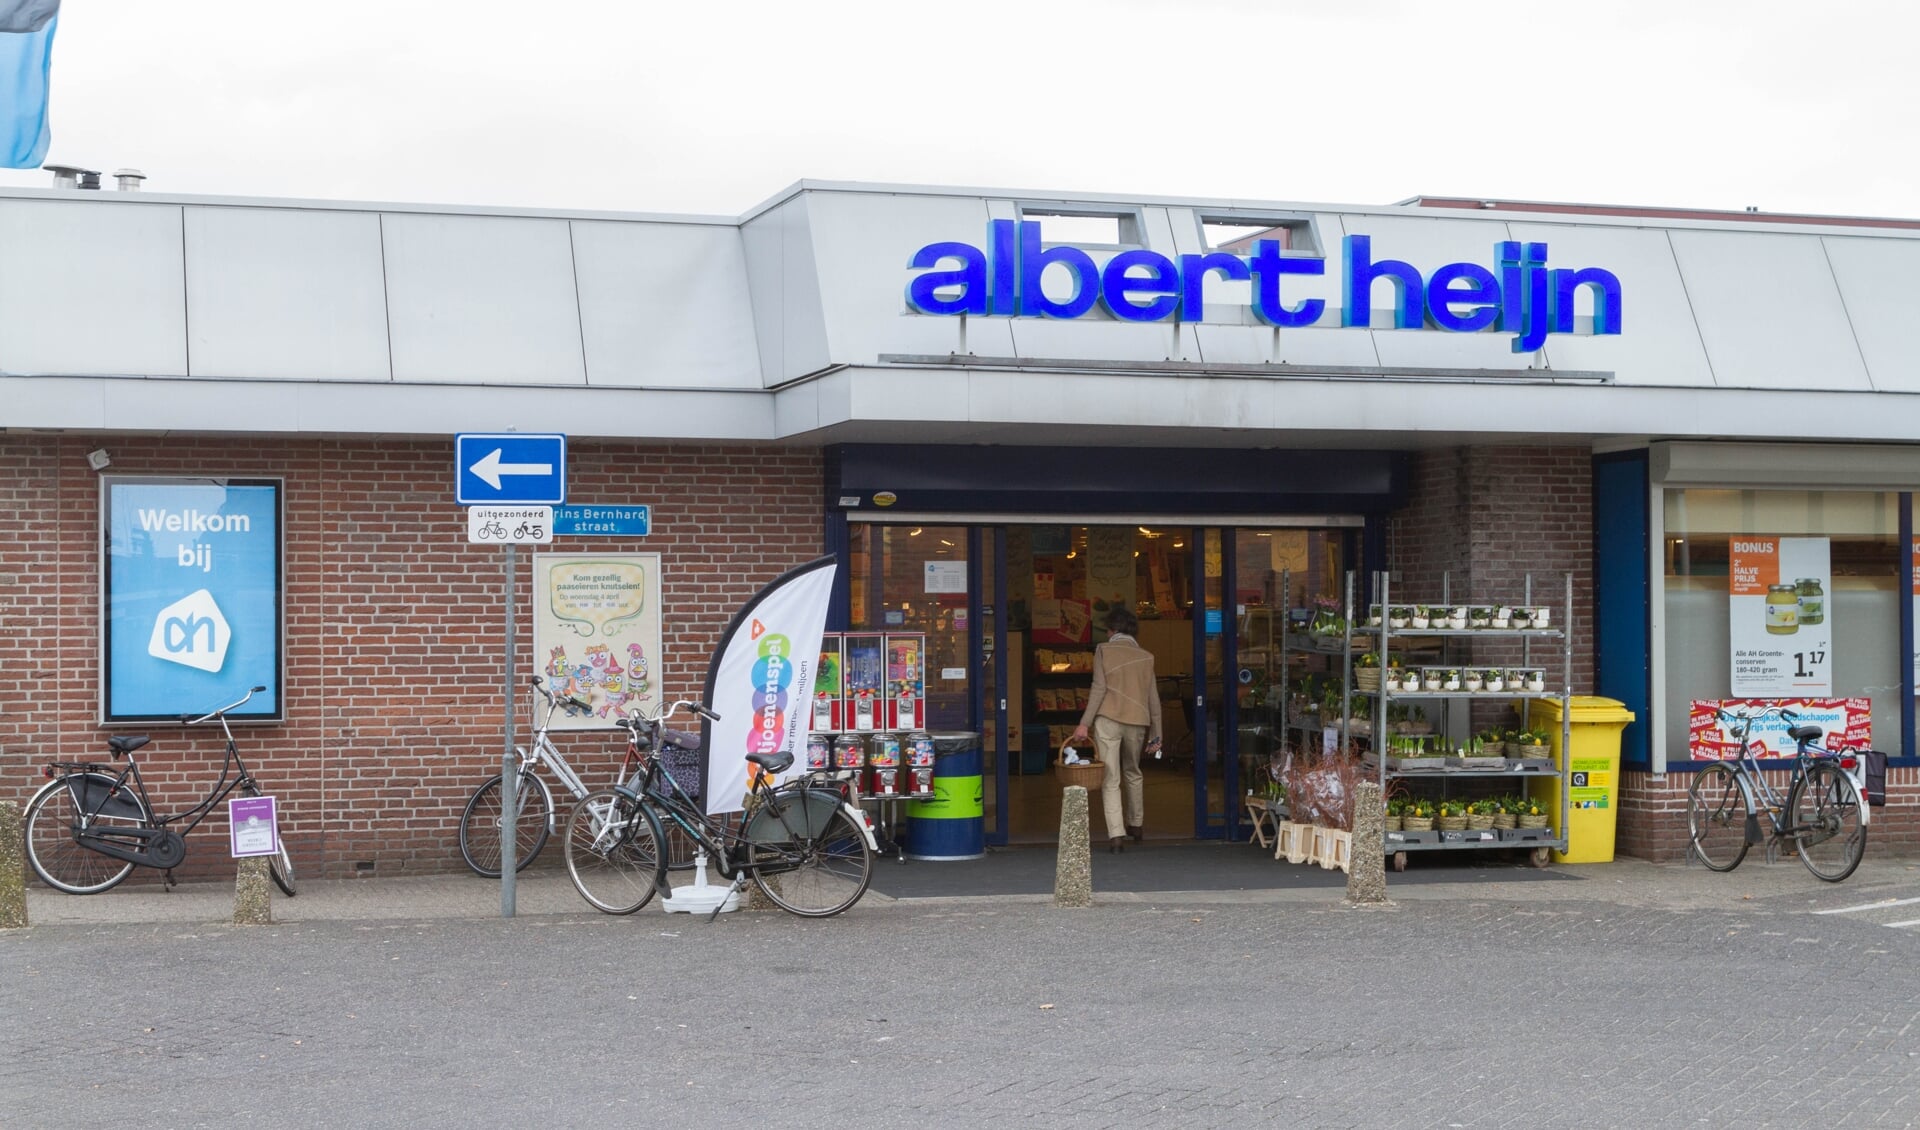 De centrale organisatie wil de huidige Albert Heijn niet meer ondersteunen, omdat de formule van deze winkel verouderd is. 